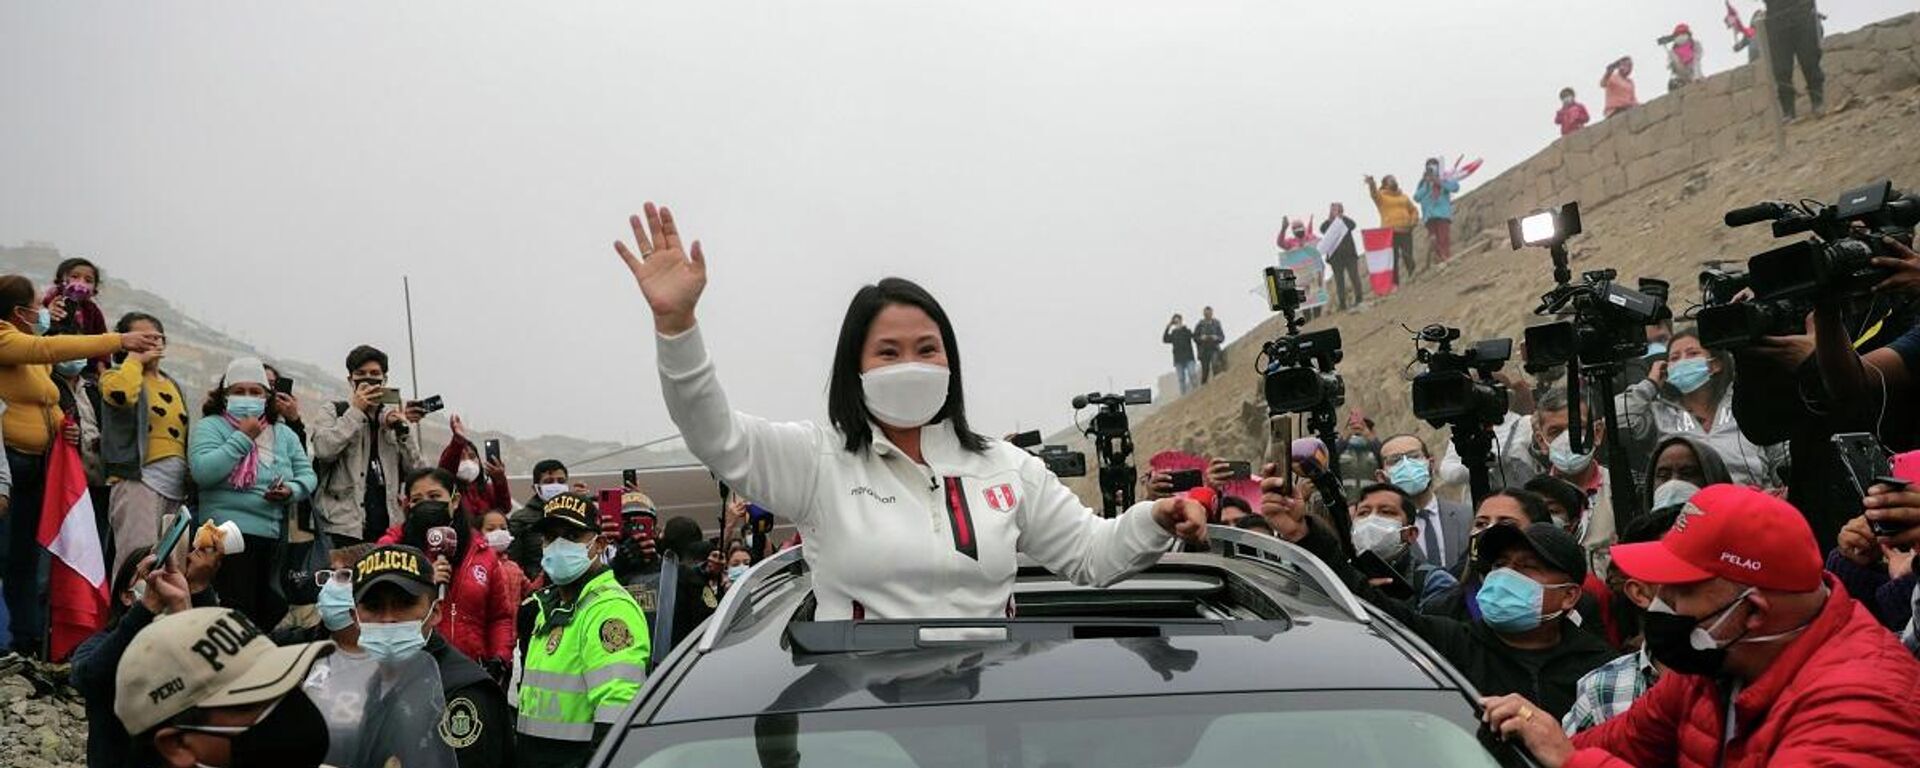  Keiko Fujimori, la candidata de derecha en las elecciones generales en Perú - Sputnik Mundo, 1920, 06.06.2021